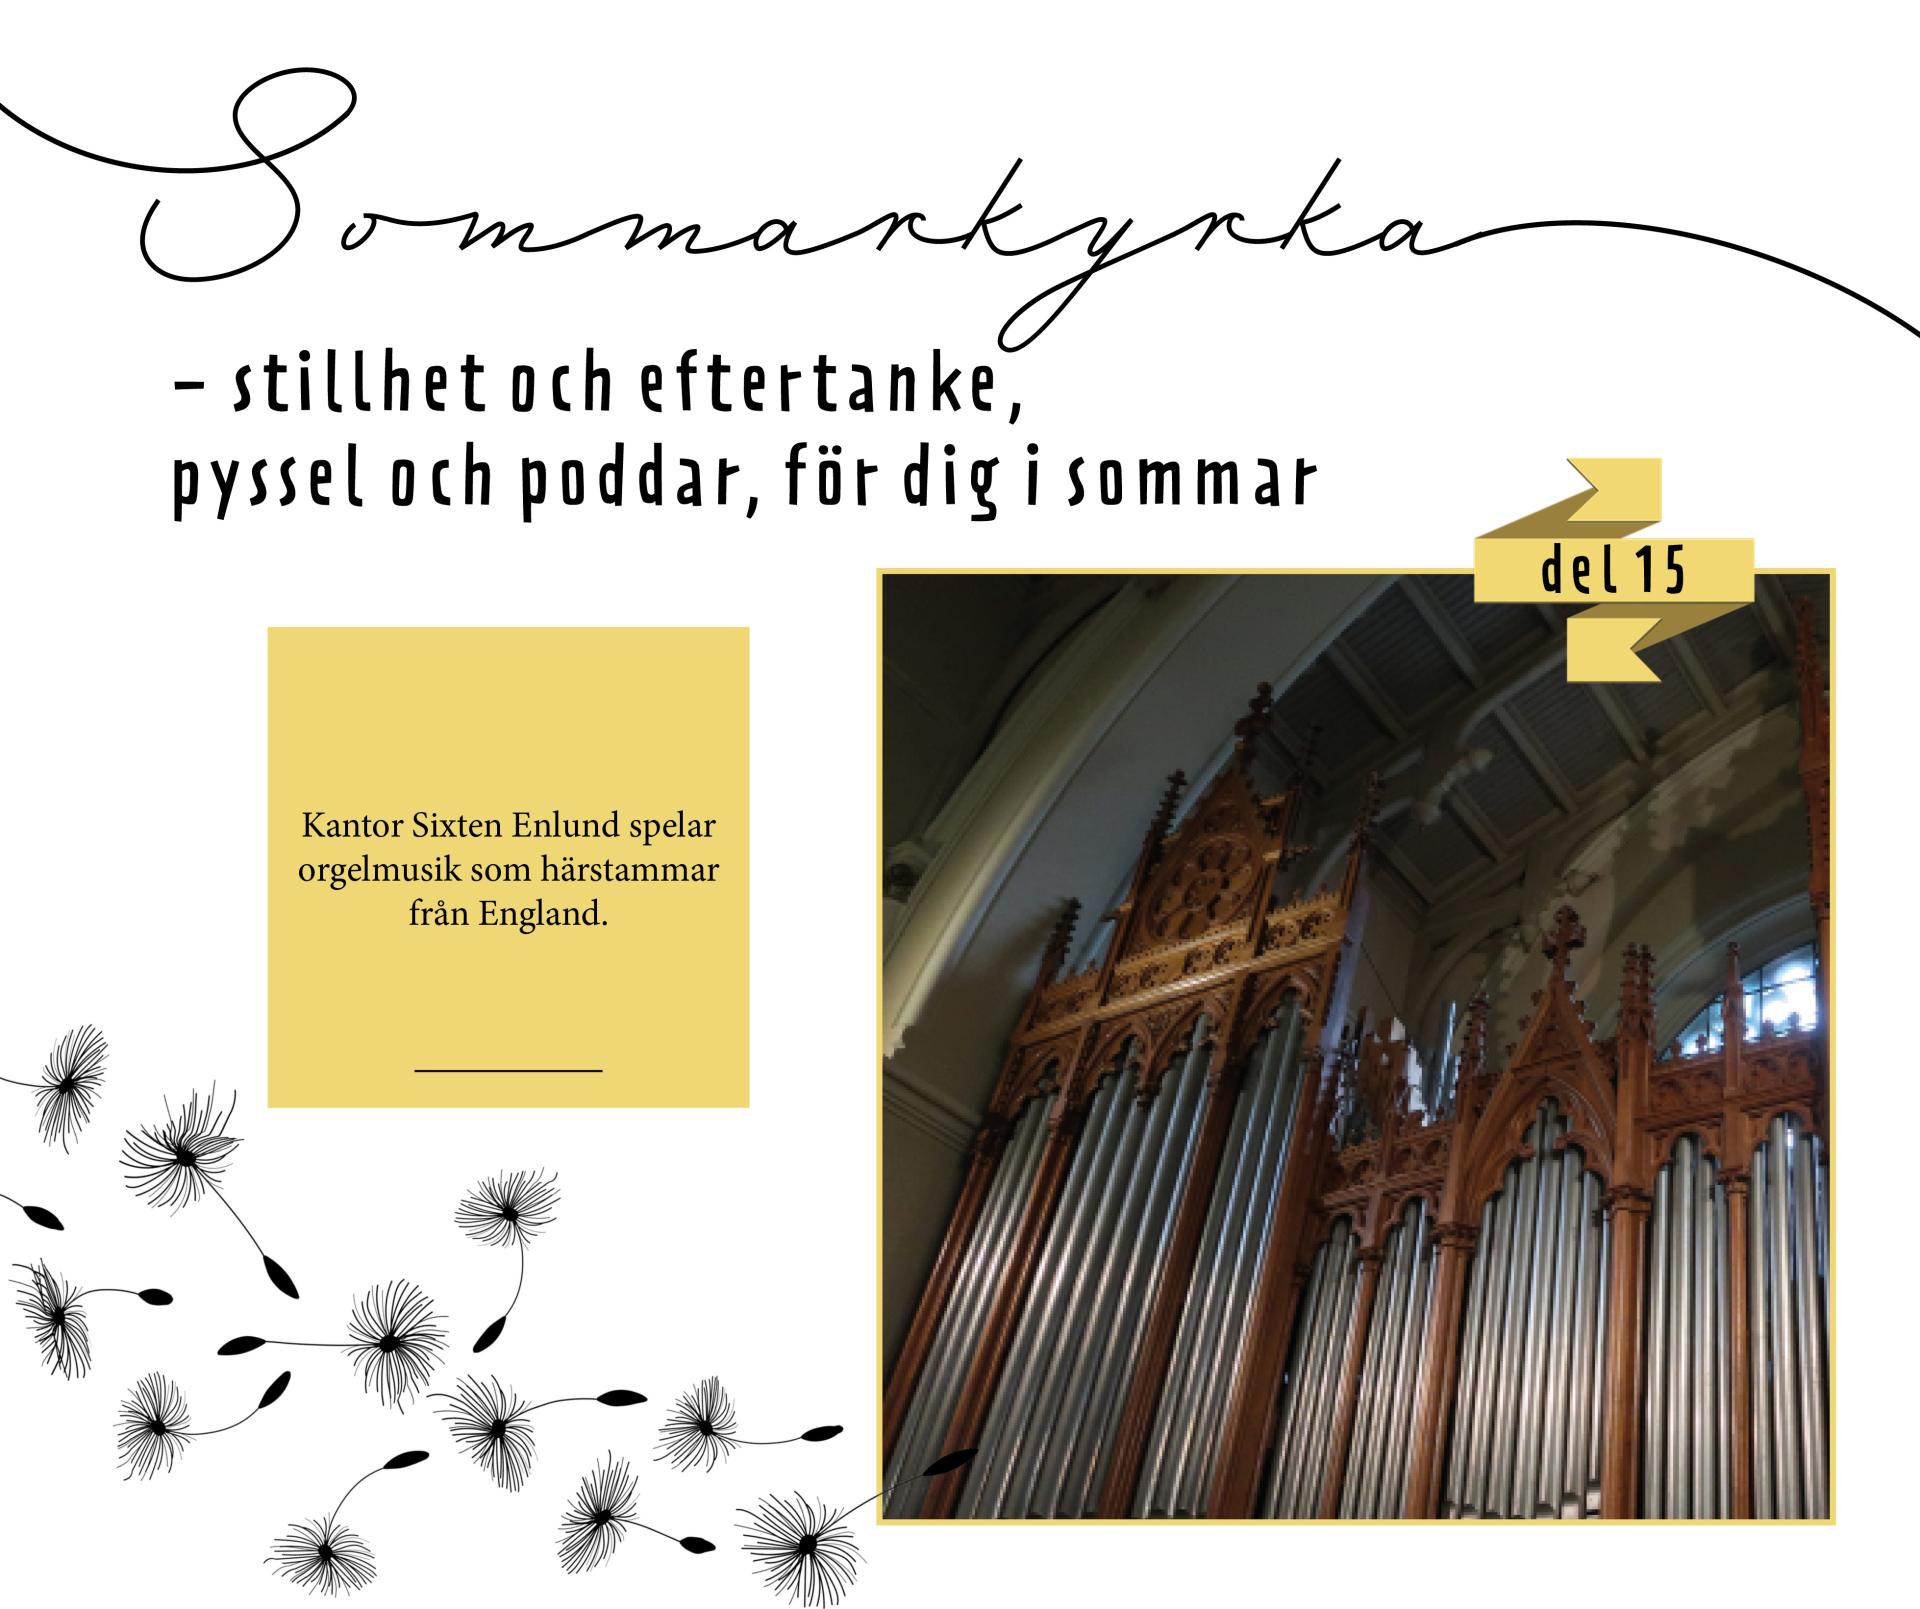 Orgelpiporna i Johanneskyrkan med texten